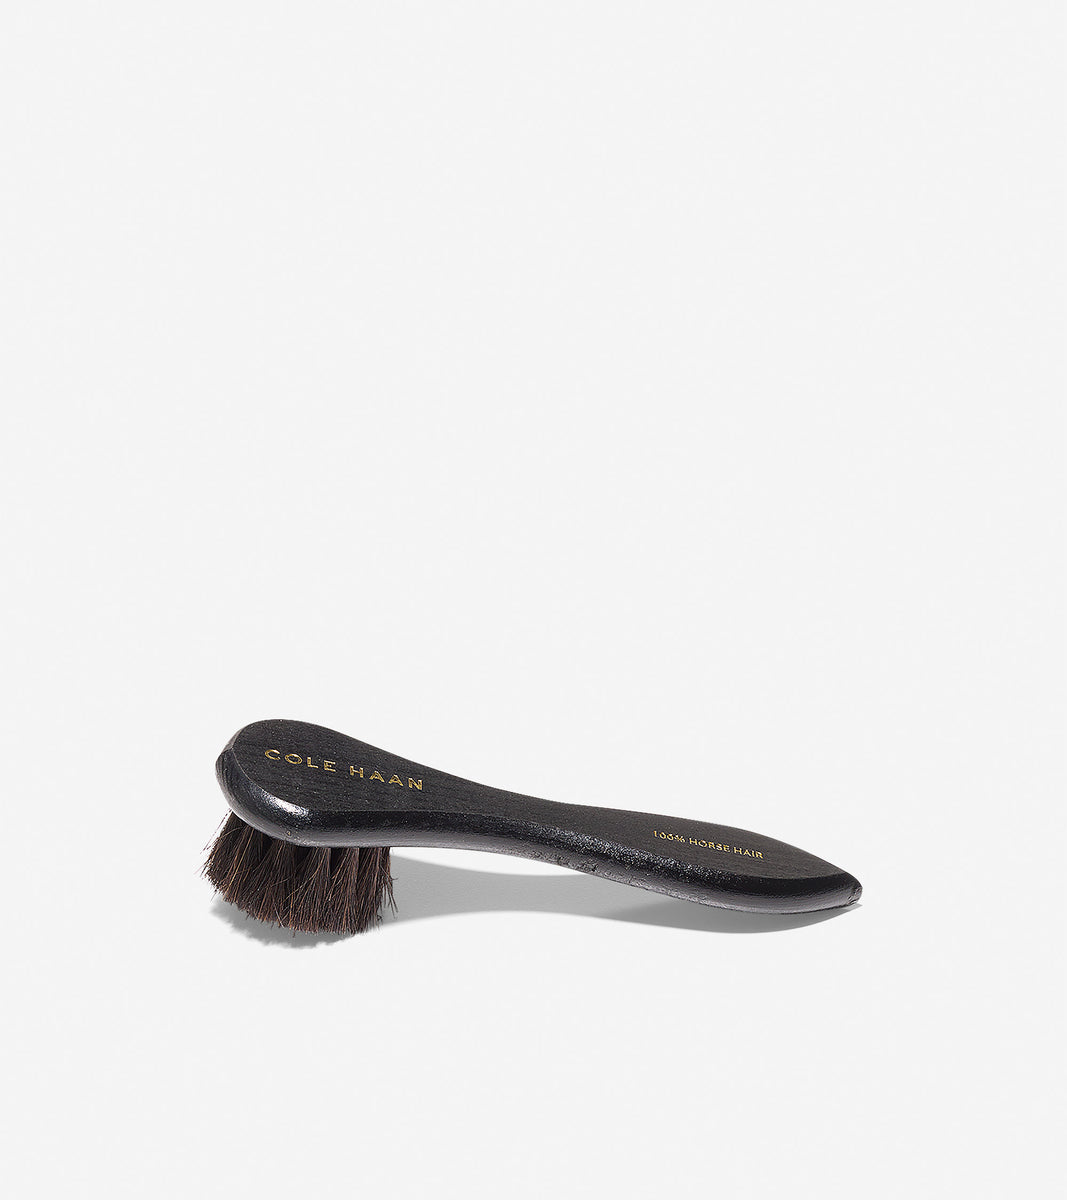 ColeHaan-Polish Dauber Brush-sc1007-Dark Bristle Black